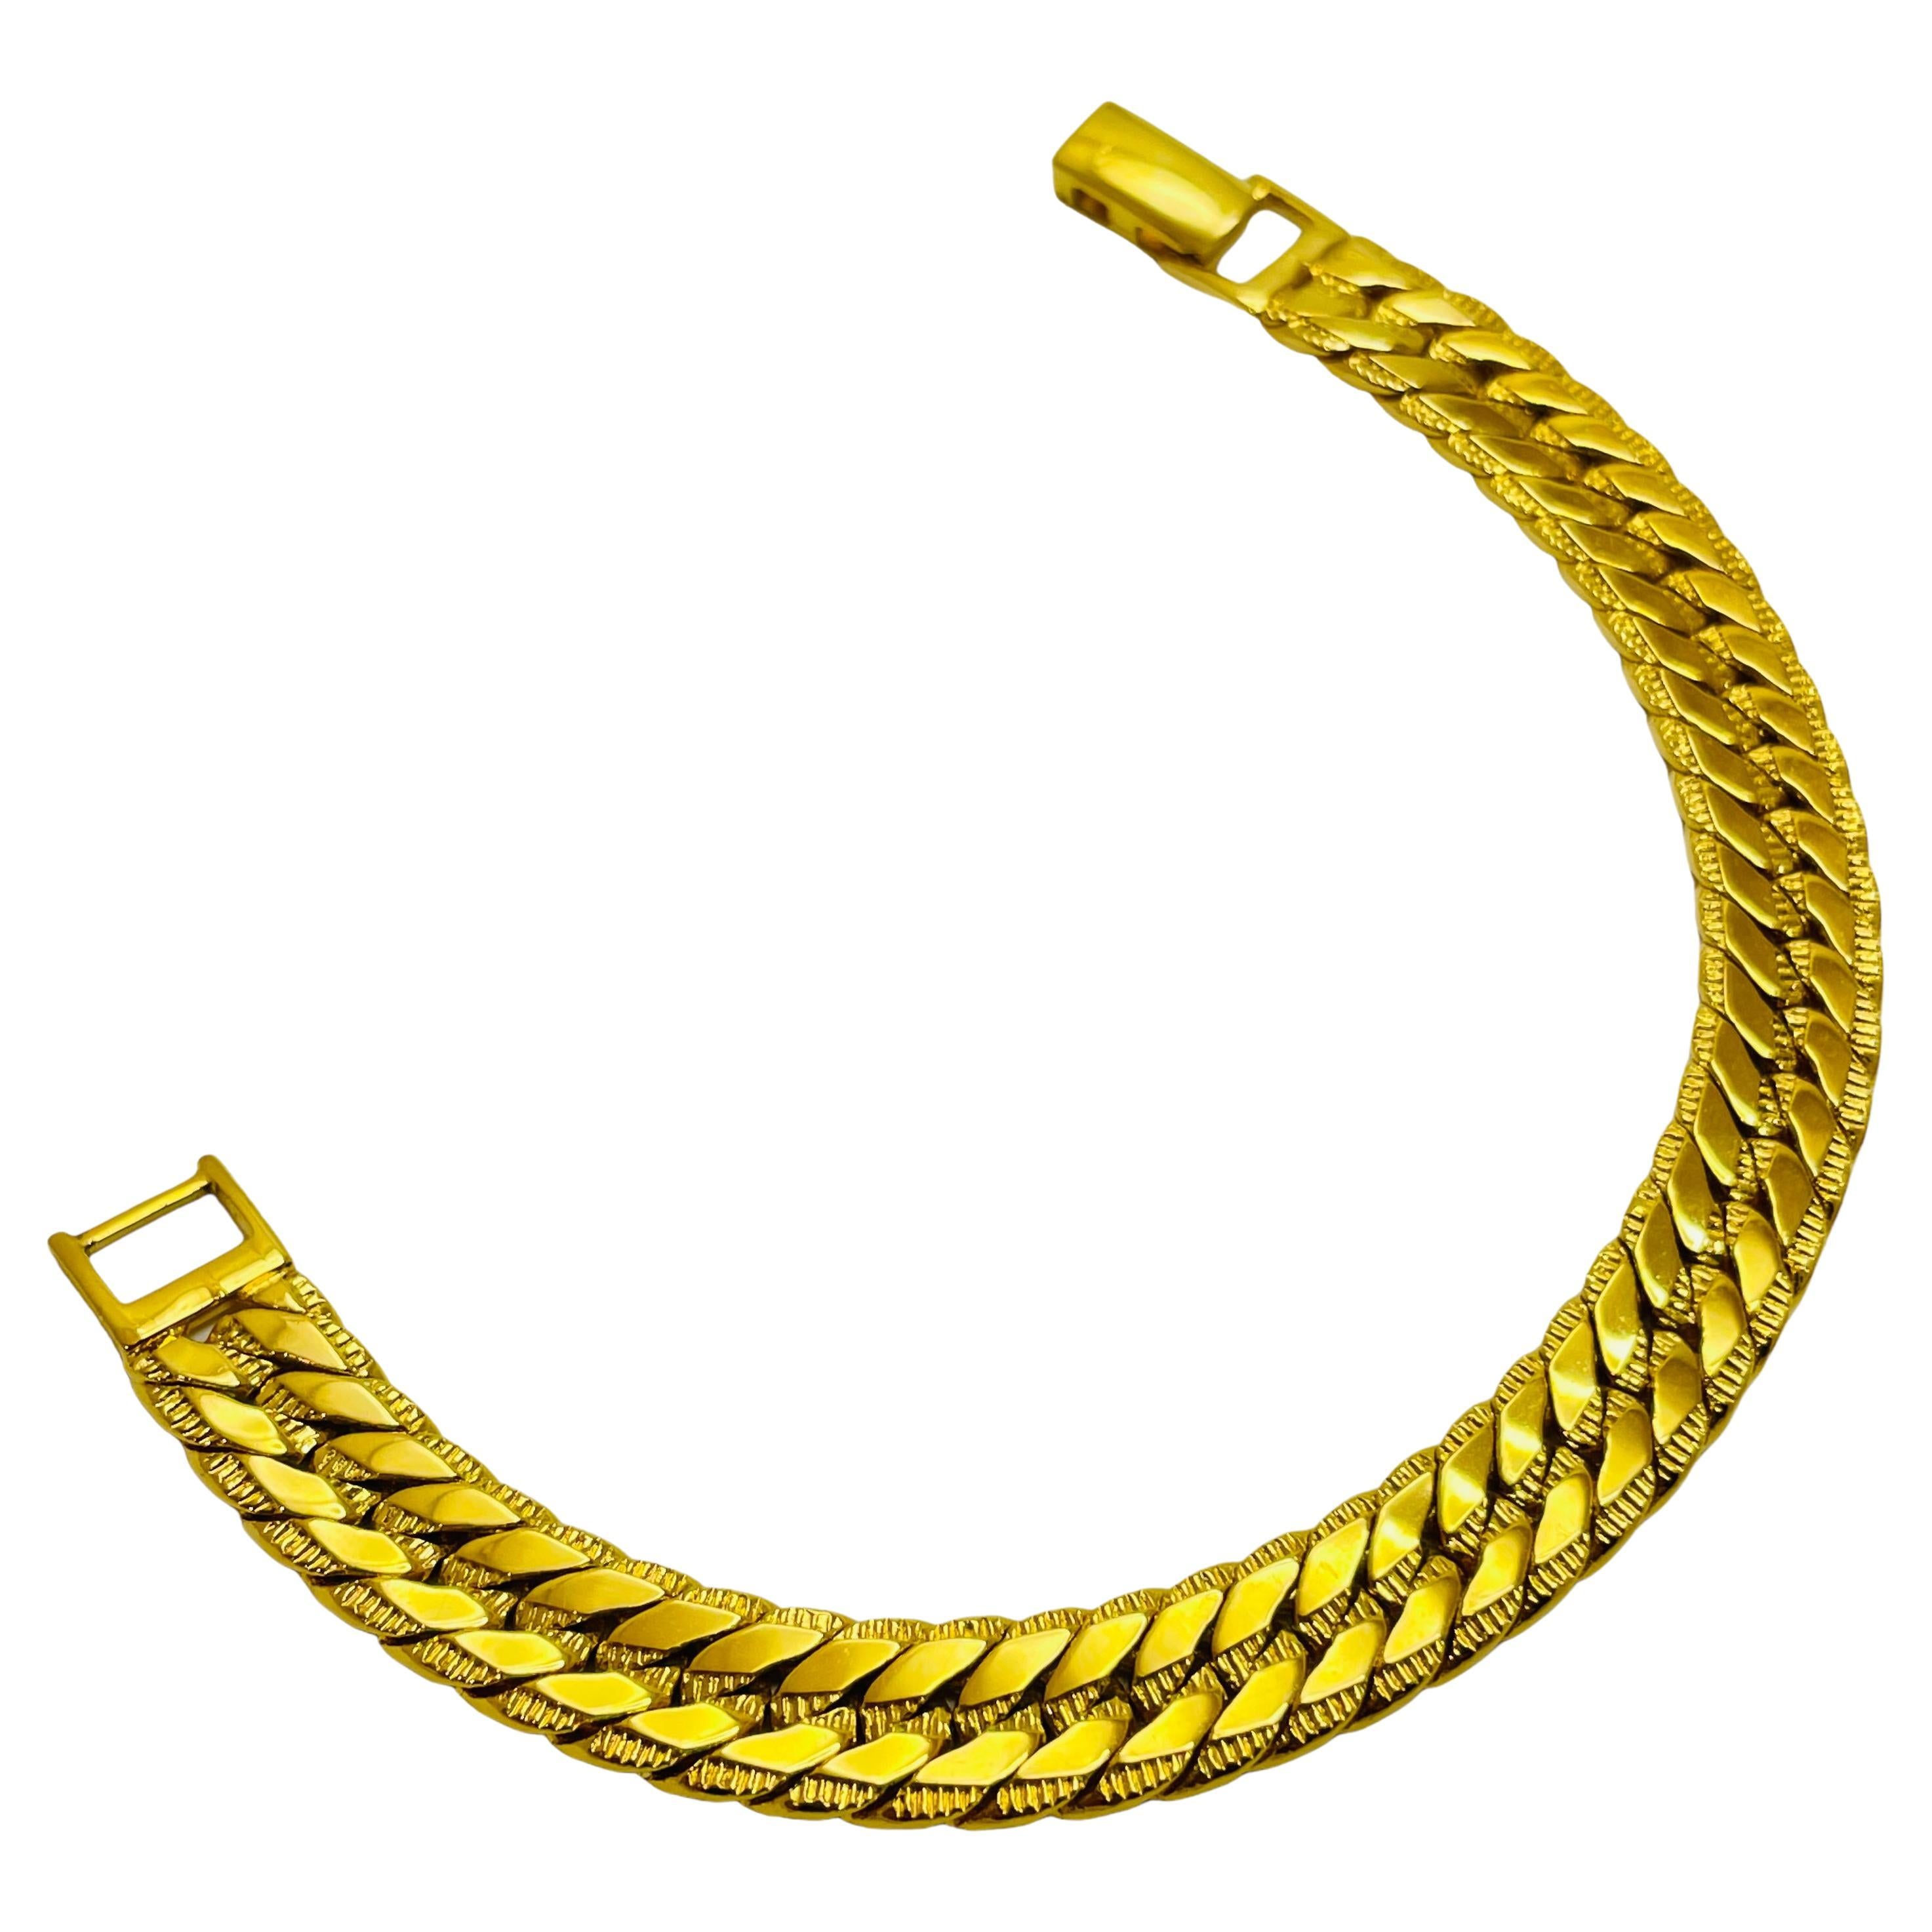 NAPIER signed vintage gold designer runway chain bracelet